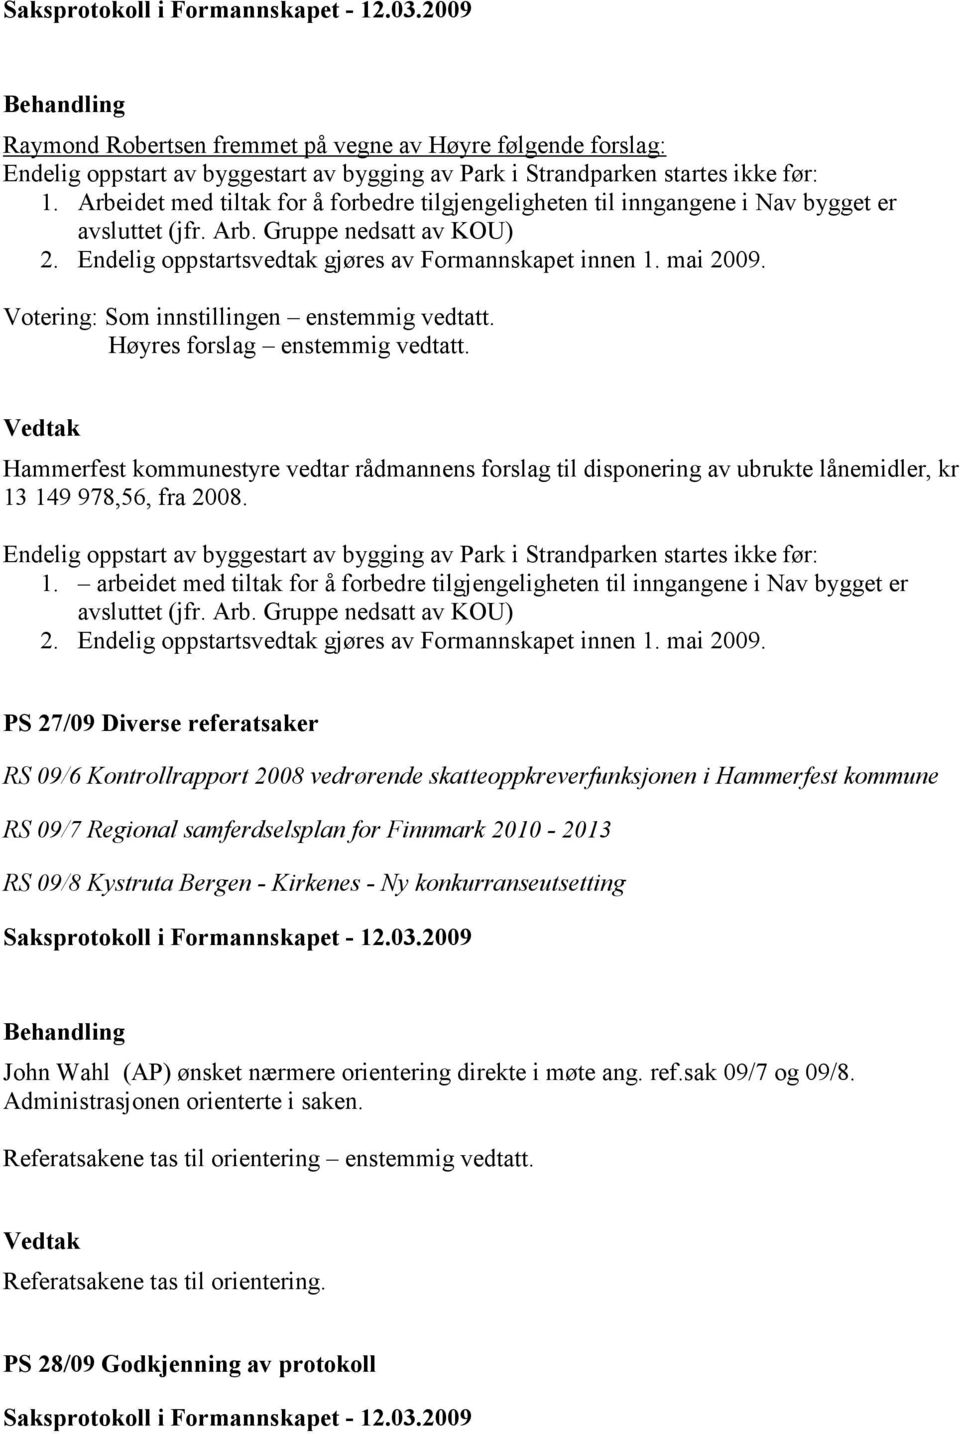 Votering: Som innstillingen enstemmig vedtatt. Høyres forslag enstemmig vedtatt. Hammerfest kommunestyre vedtar rådmannens forslag til disponering av ubrukte lånemidler, kr 13 149 978,56, fra 2008.